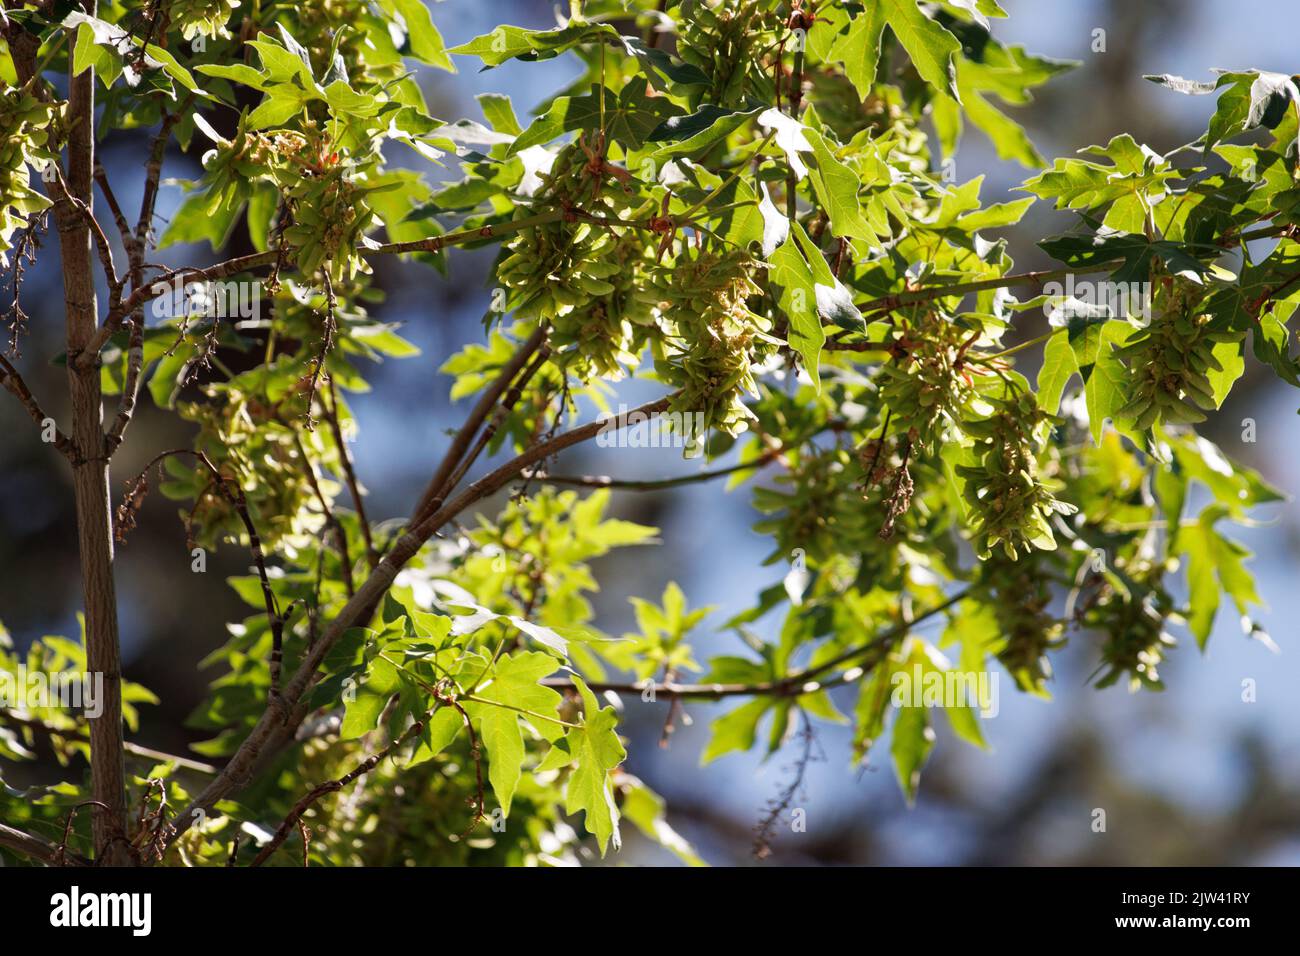 Grüne, unreife, trichomatische, indehiscent samara-Frucht des Bigleaf Maple, Acer macrophyllum, Sapindaceae, beheimatet in den San Bernardino Mountains, Sommer. Stockfoto